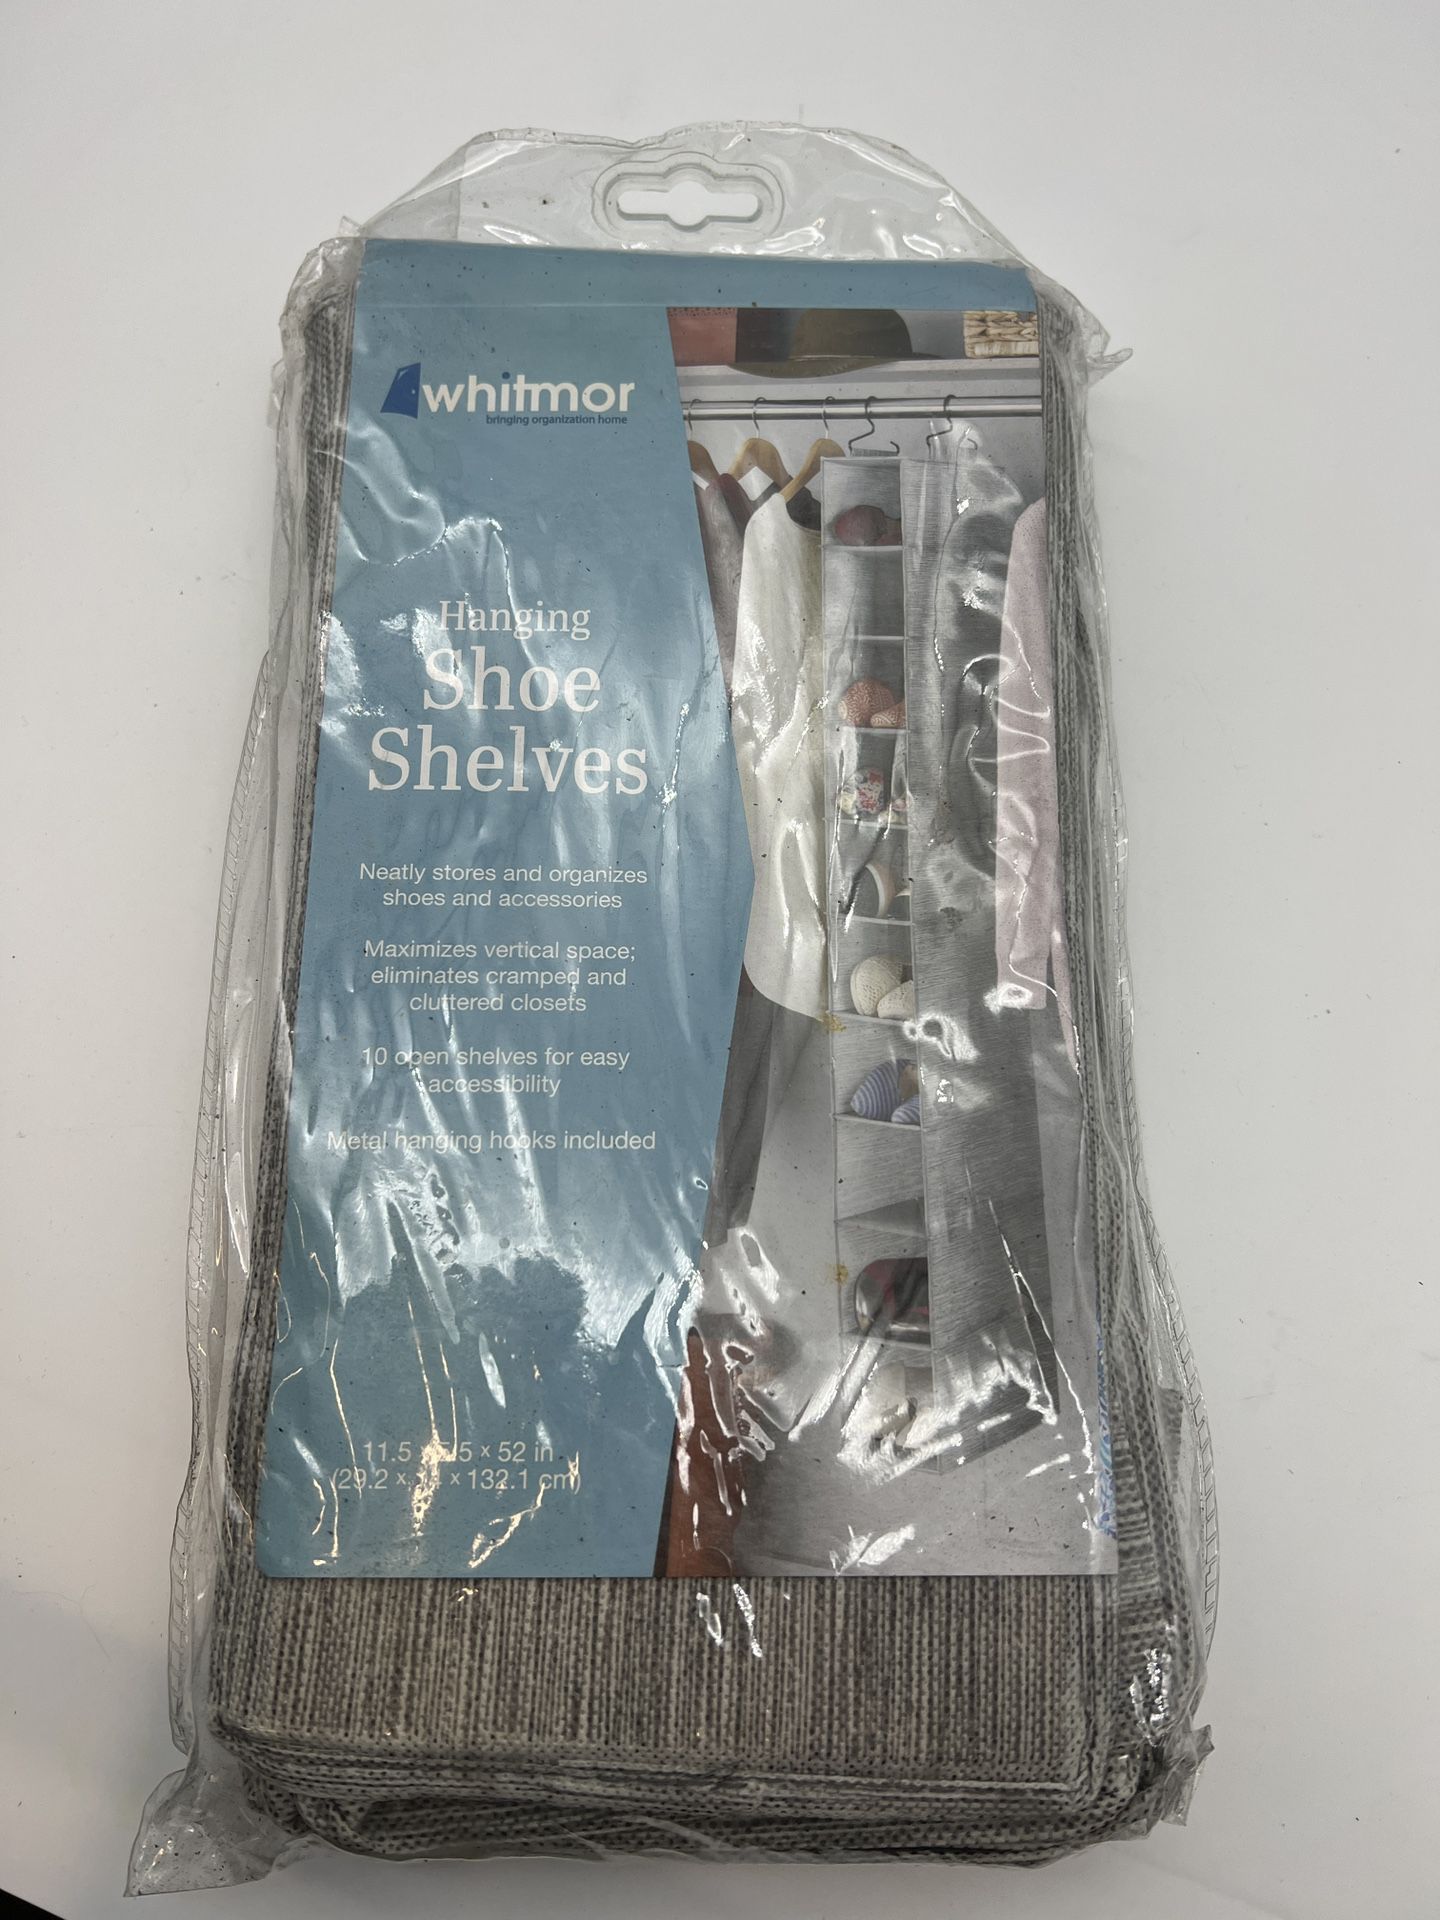 Whitmor 11.5"x5.5"x52" Hanging Shoe Shelves Closet Organizer - 10 Sections Gray